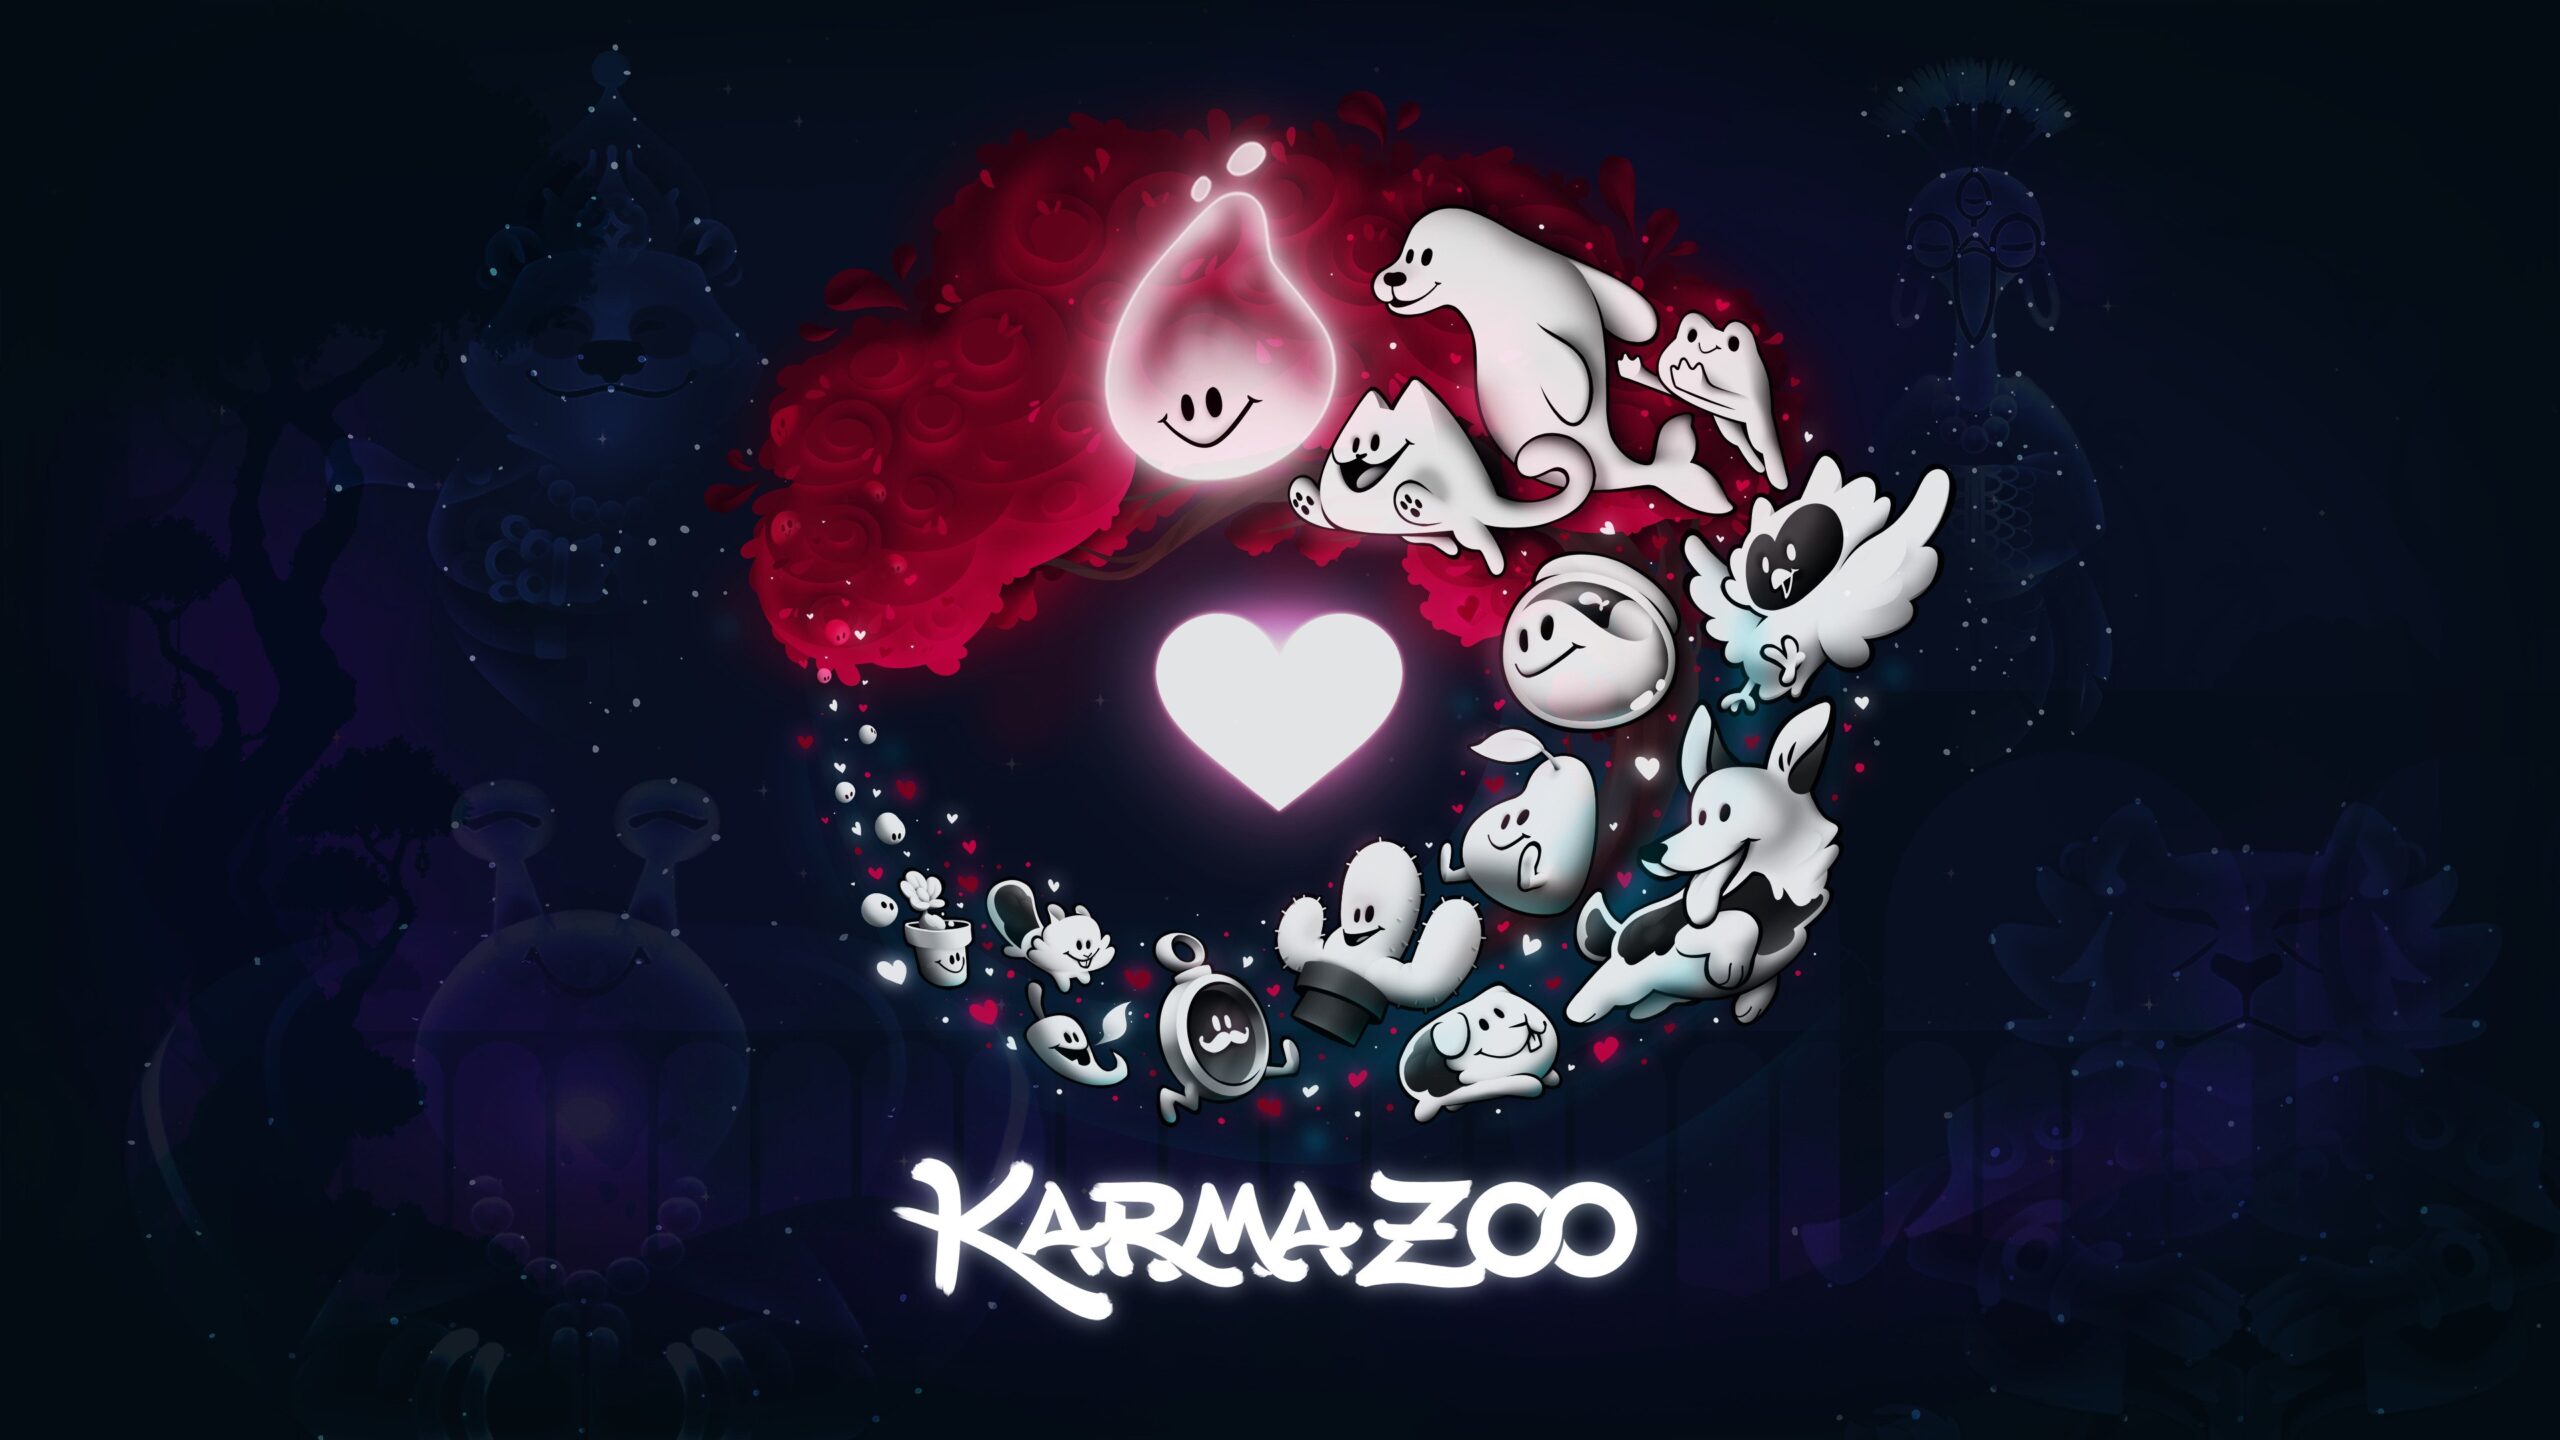 Необычный кооперативный платформер KarmaZoo выйдет 14 ноября, показали новый трейлер: с сайта NEWXBOXONE.RU